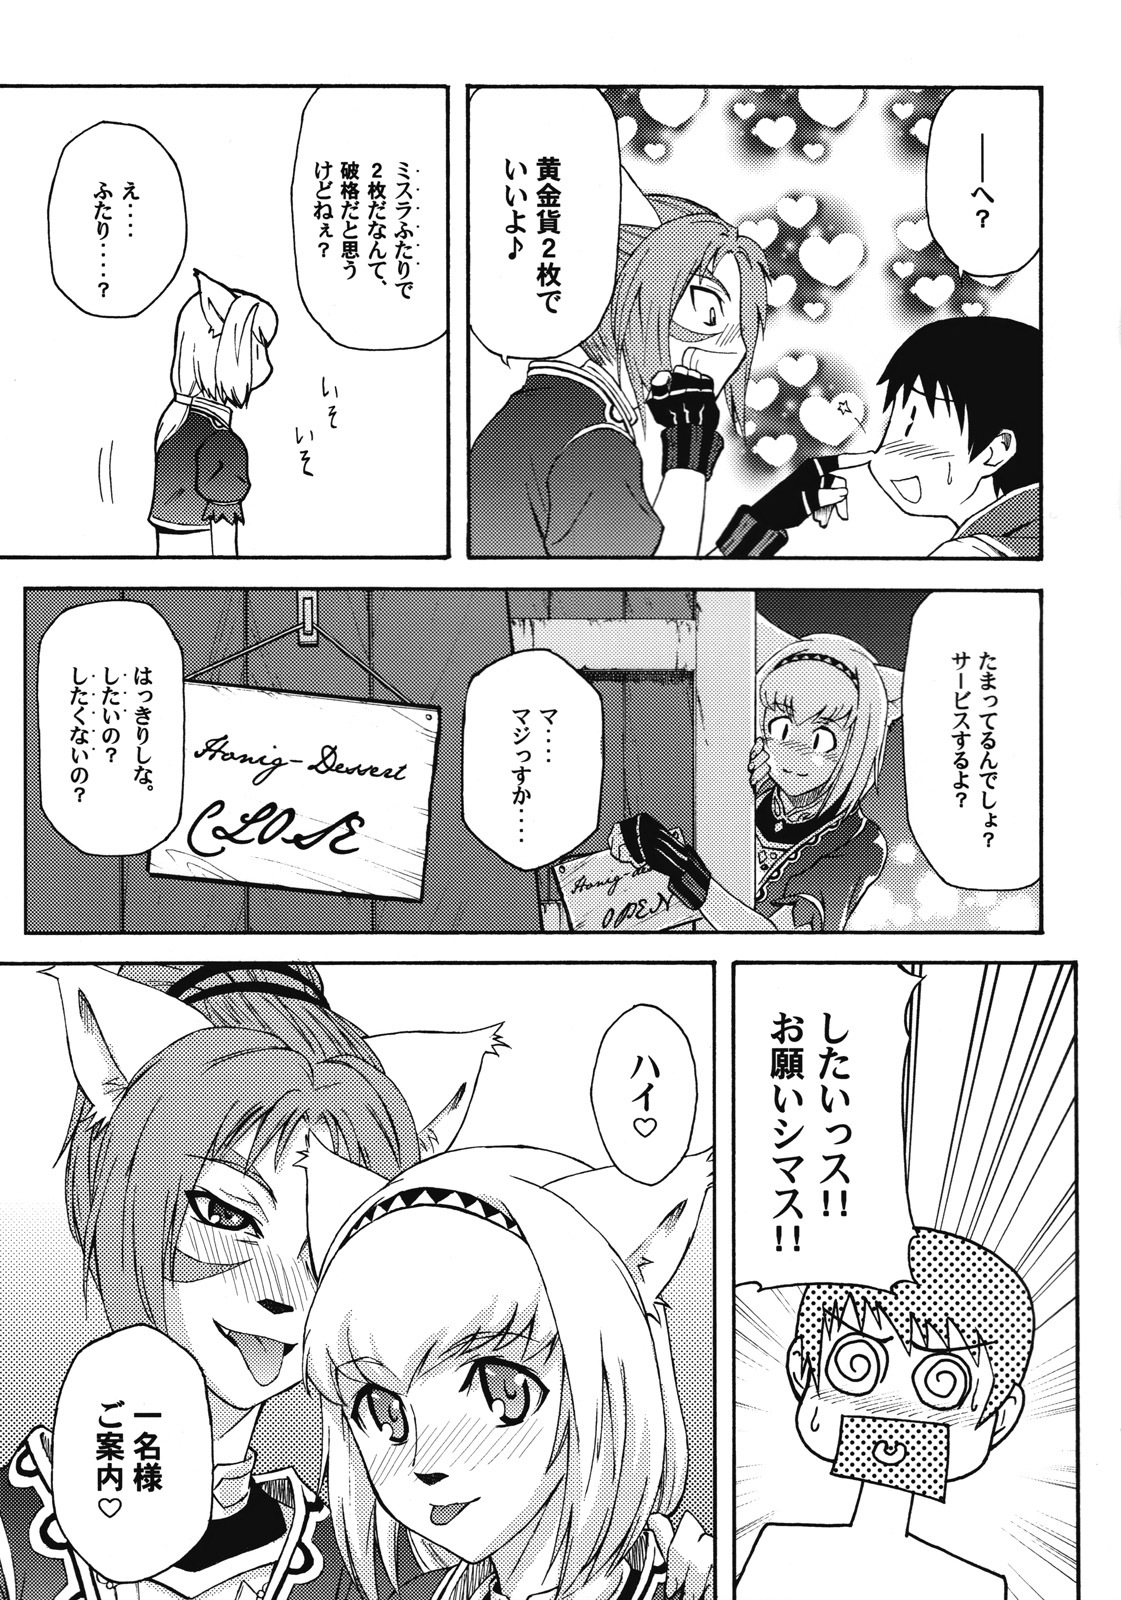 [ARCHENEMY (Kasumi Ryo)] Ein Joghurt wie ein Honig-Dessert. EXTENDED EDITION (Final Fantasy XI) page 8 full